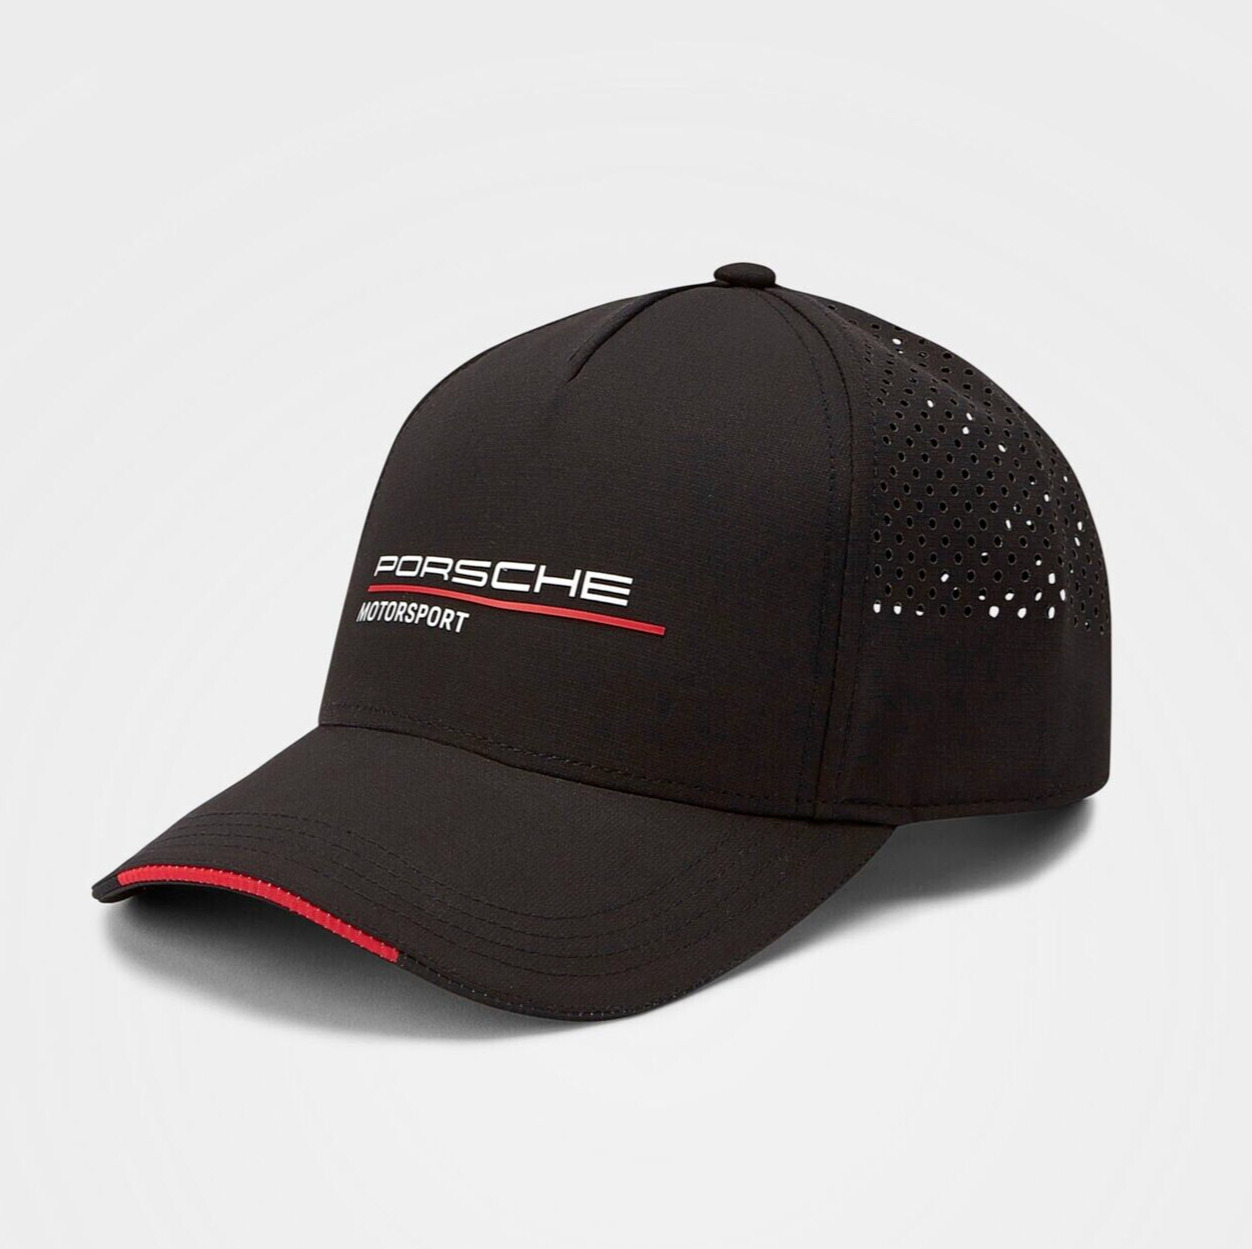 Official Porsche Motorsport Racing Fanwear Baseball Cap